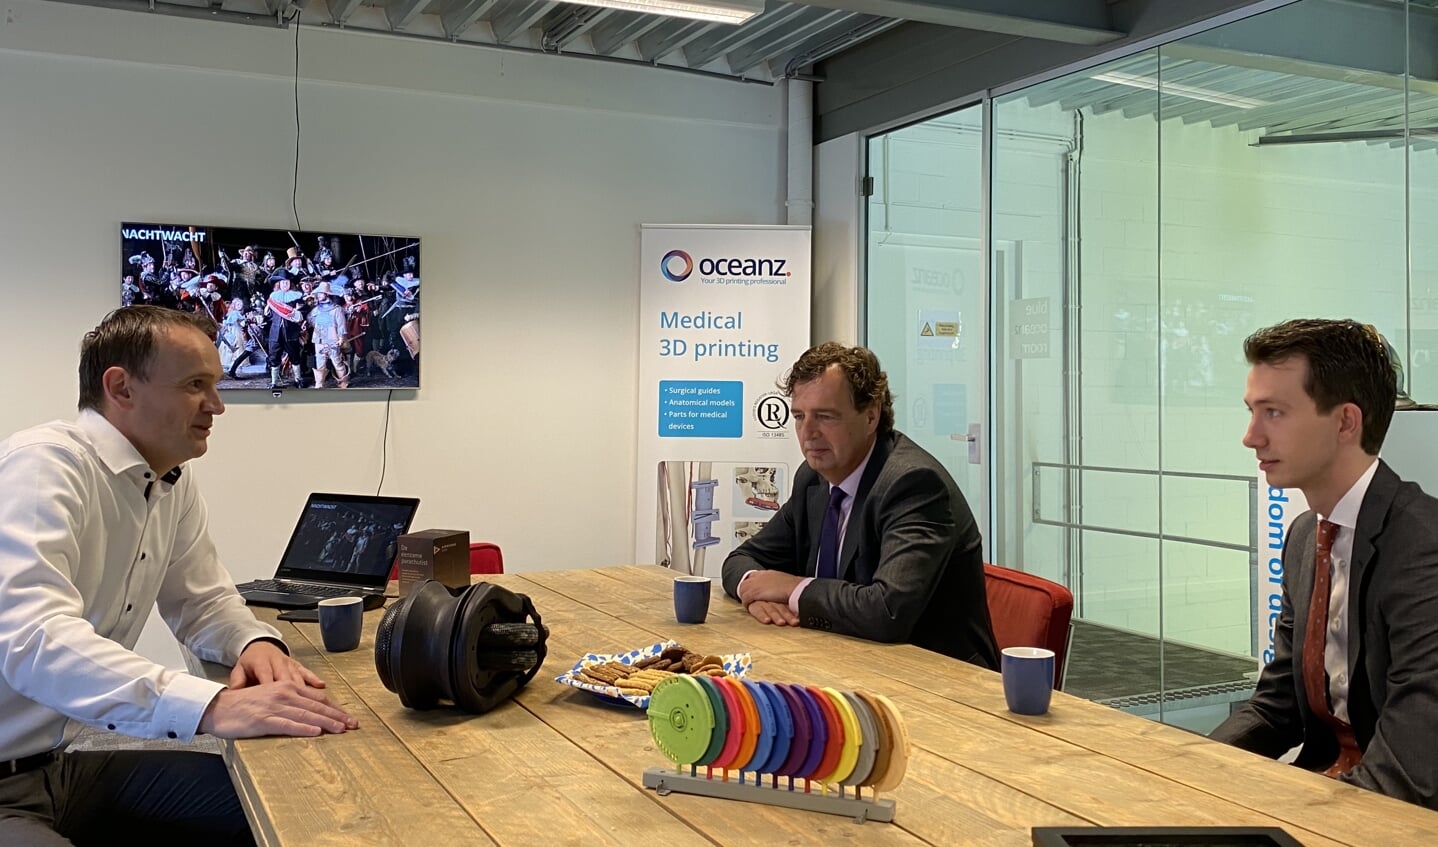 Burgemeester René Verhulst (m), wethouder Jan Pieter van der Schans (r) en accountmanager Martin Kraaijenvanger brachten een bezoek aan Oceanz 3D printing in Ede. CEO Erik van der Garde (l) vertelde hen meer over het proces, de techniek en toepassing